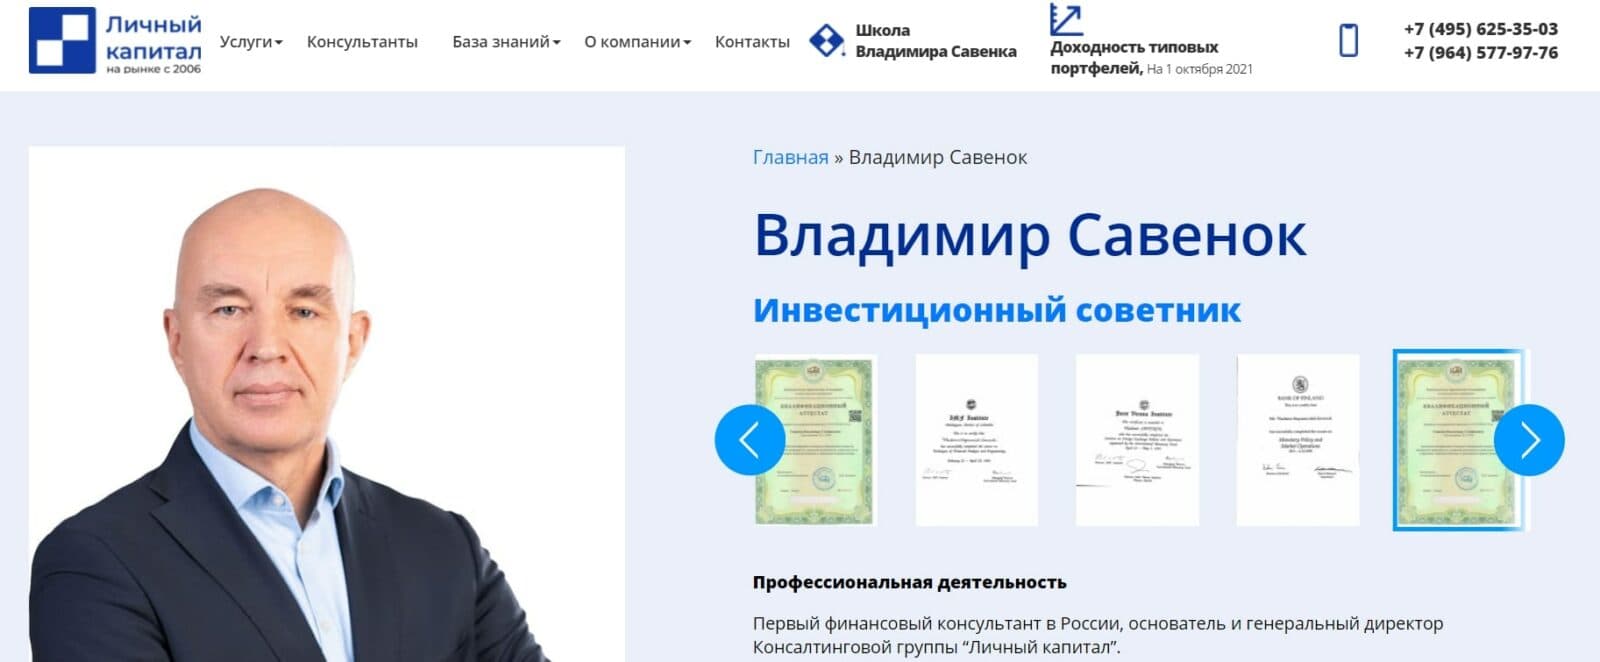 Сайт Личный капитал Владимира Савенка